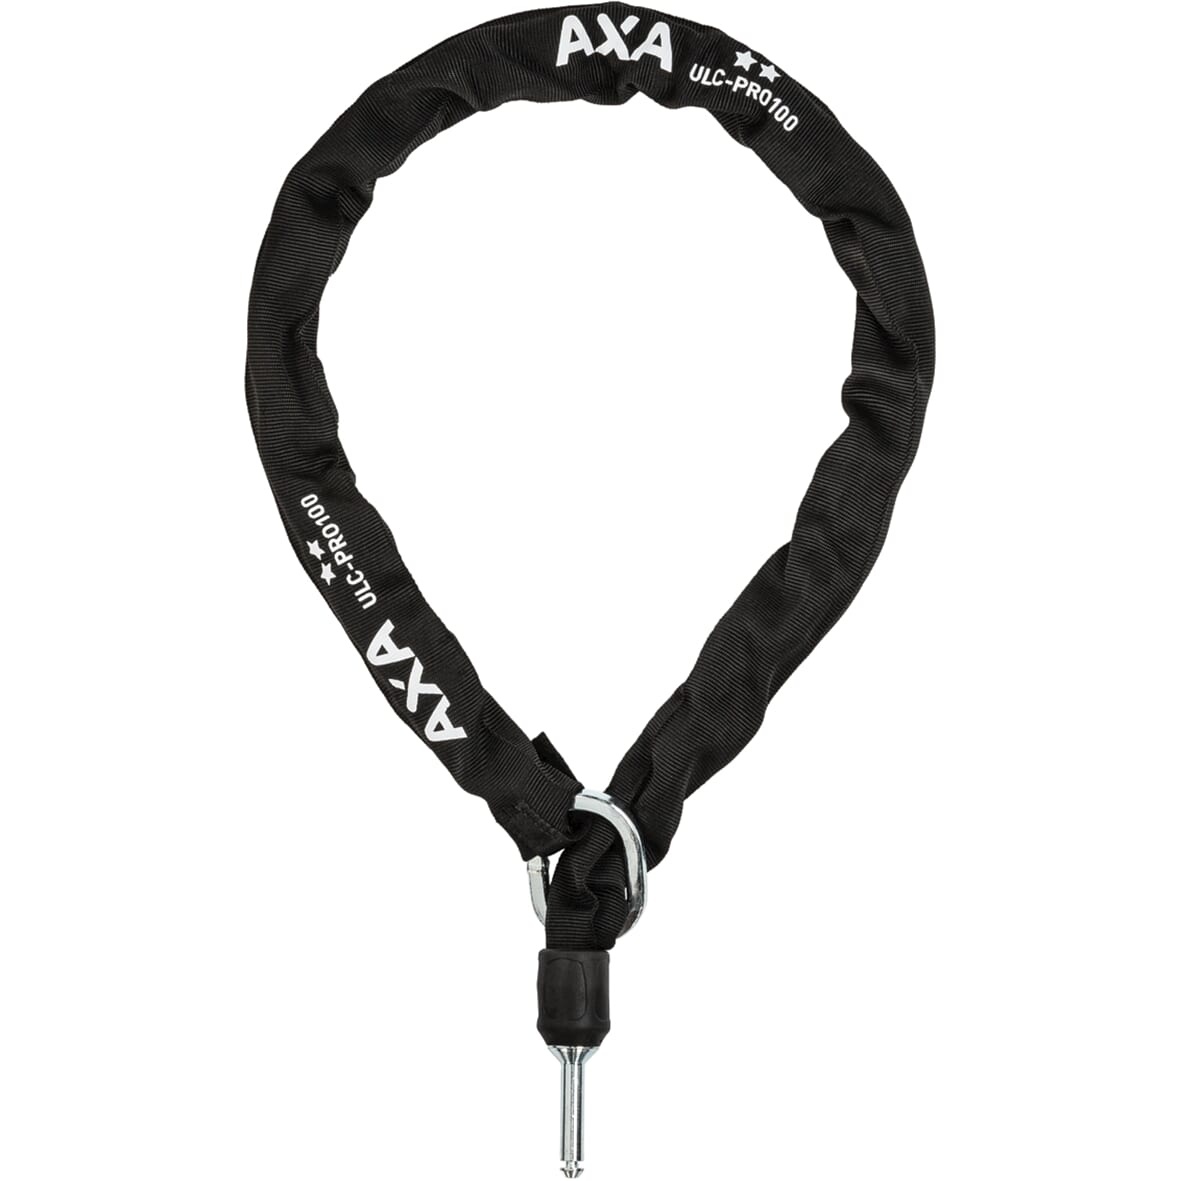 Axa insteekketting ULC 100-8 Pro ART2 zwart